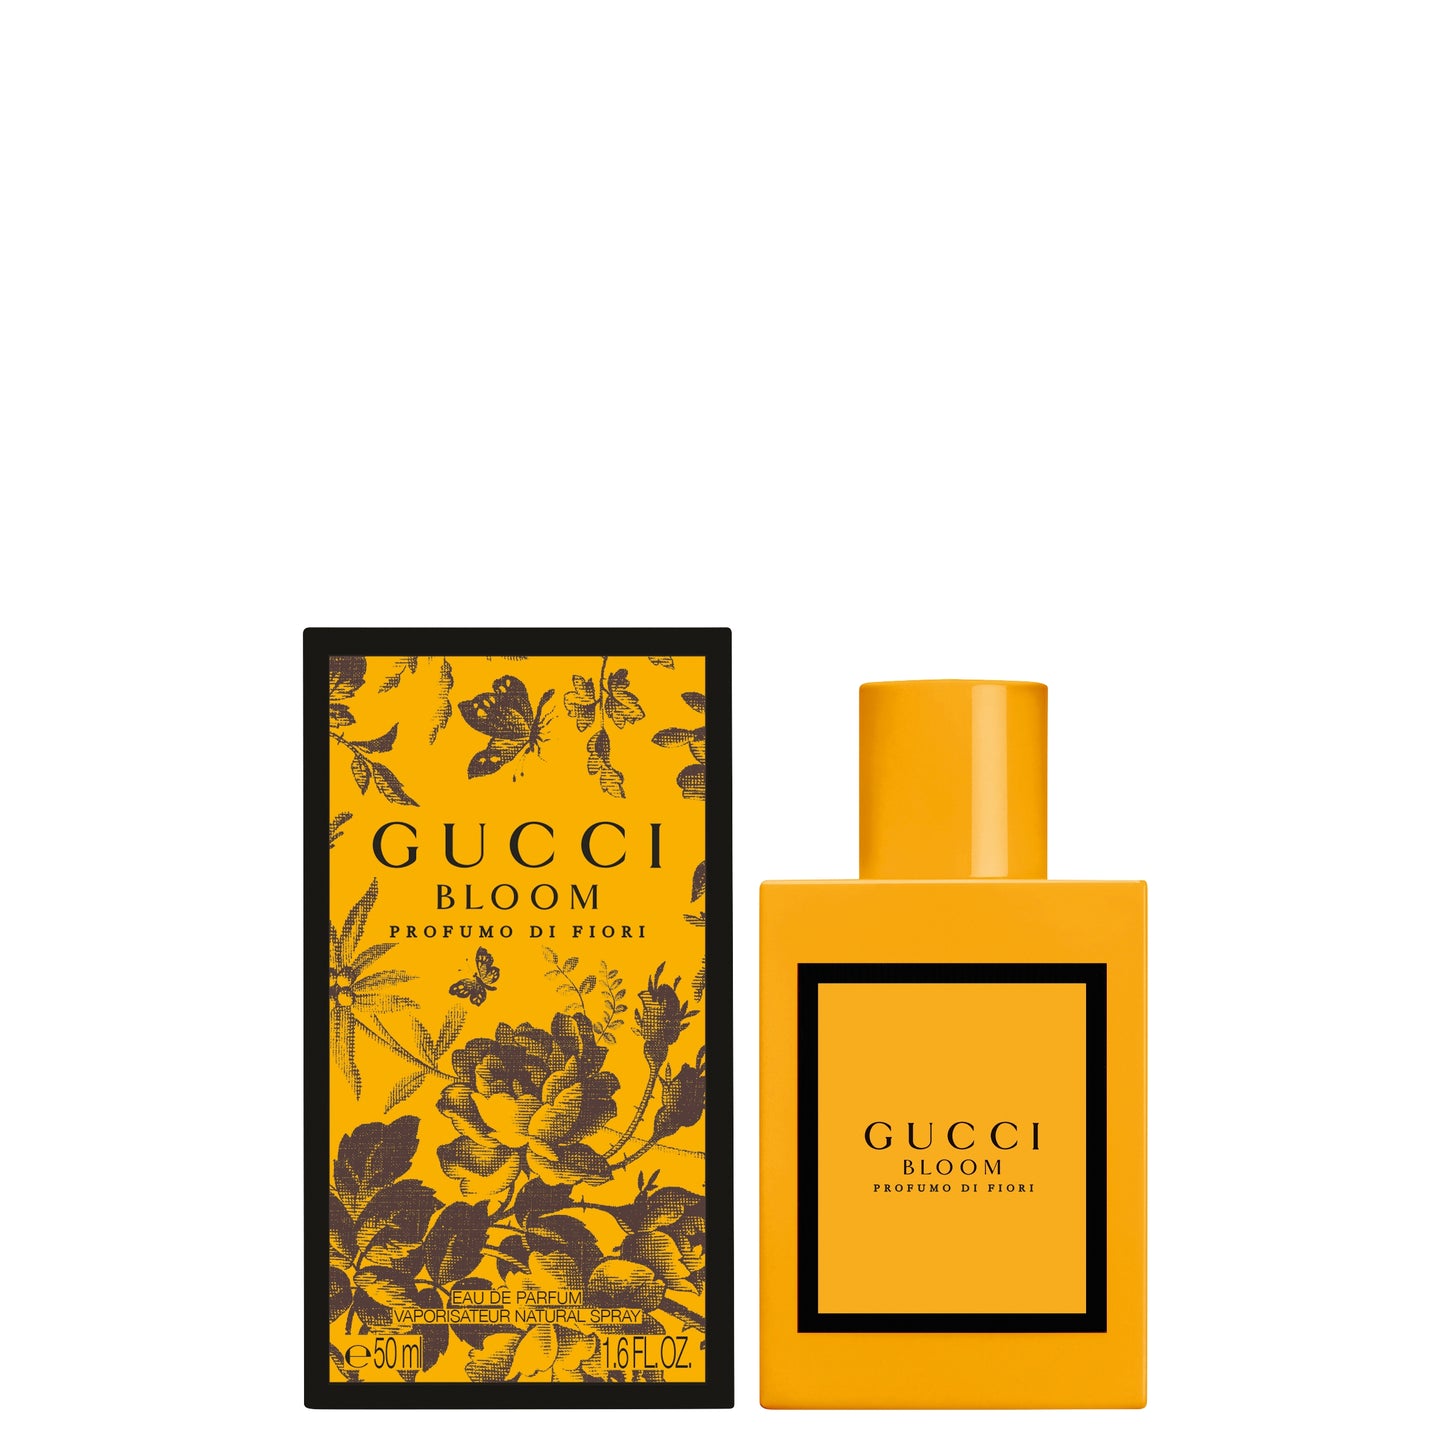 Gucci Bloom Profumo Di Fiori Eau de parfum 50 ML